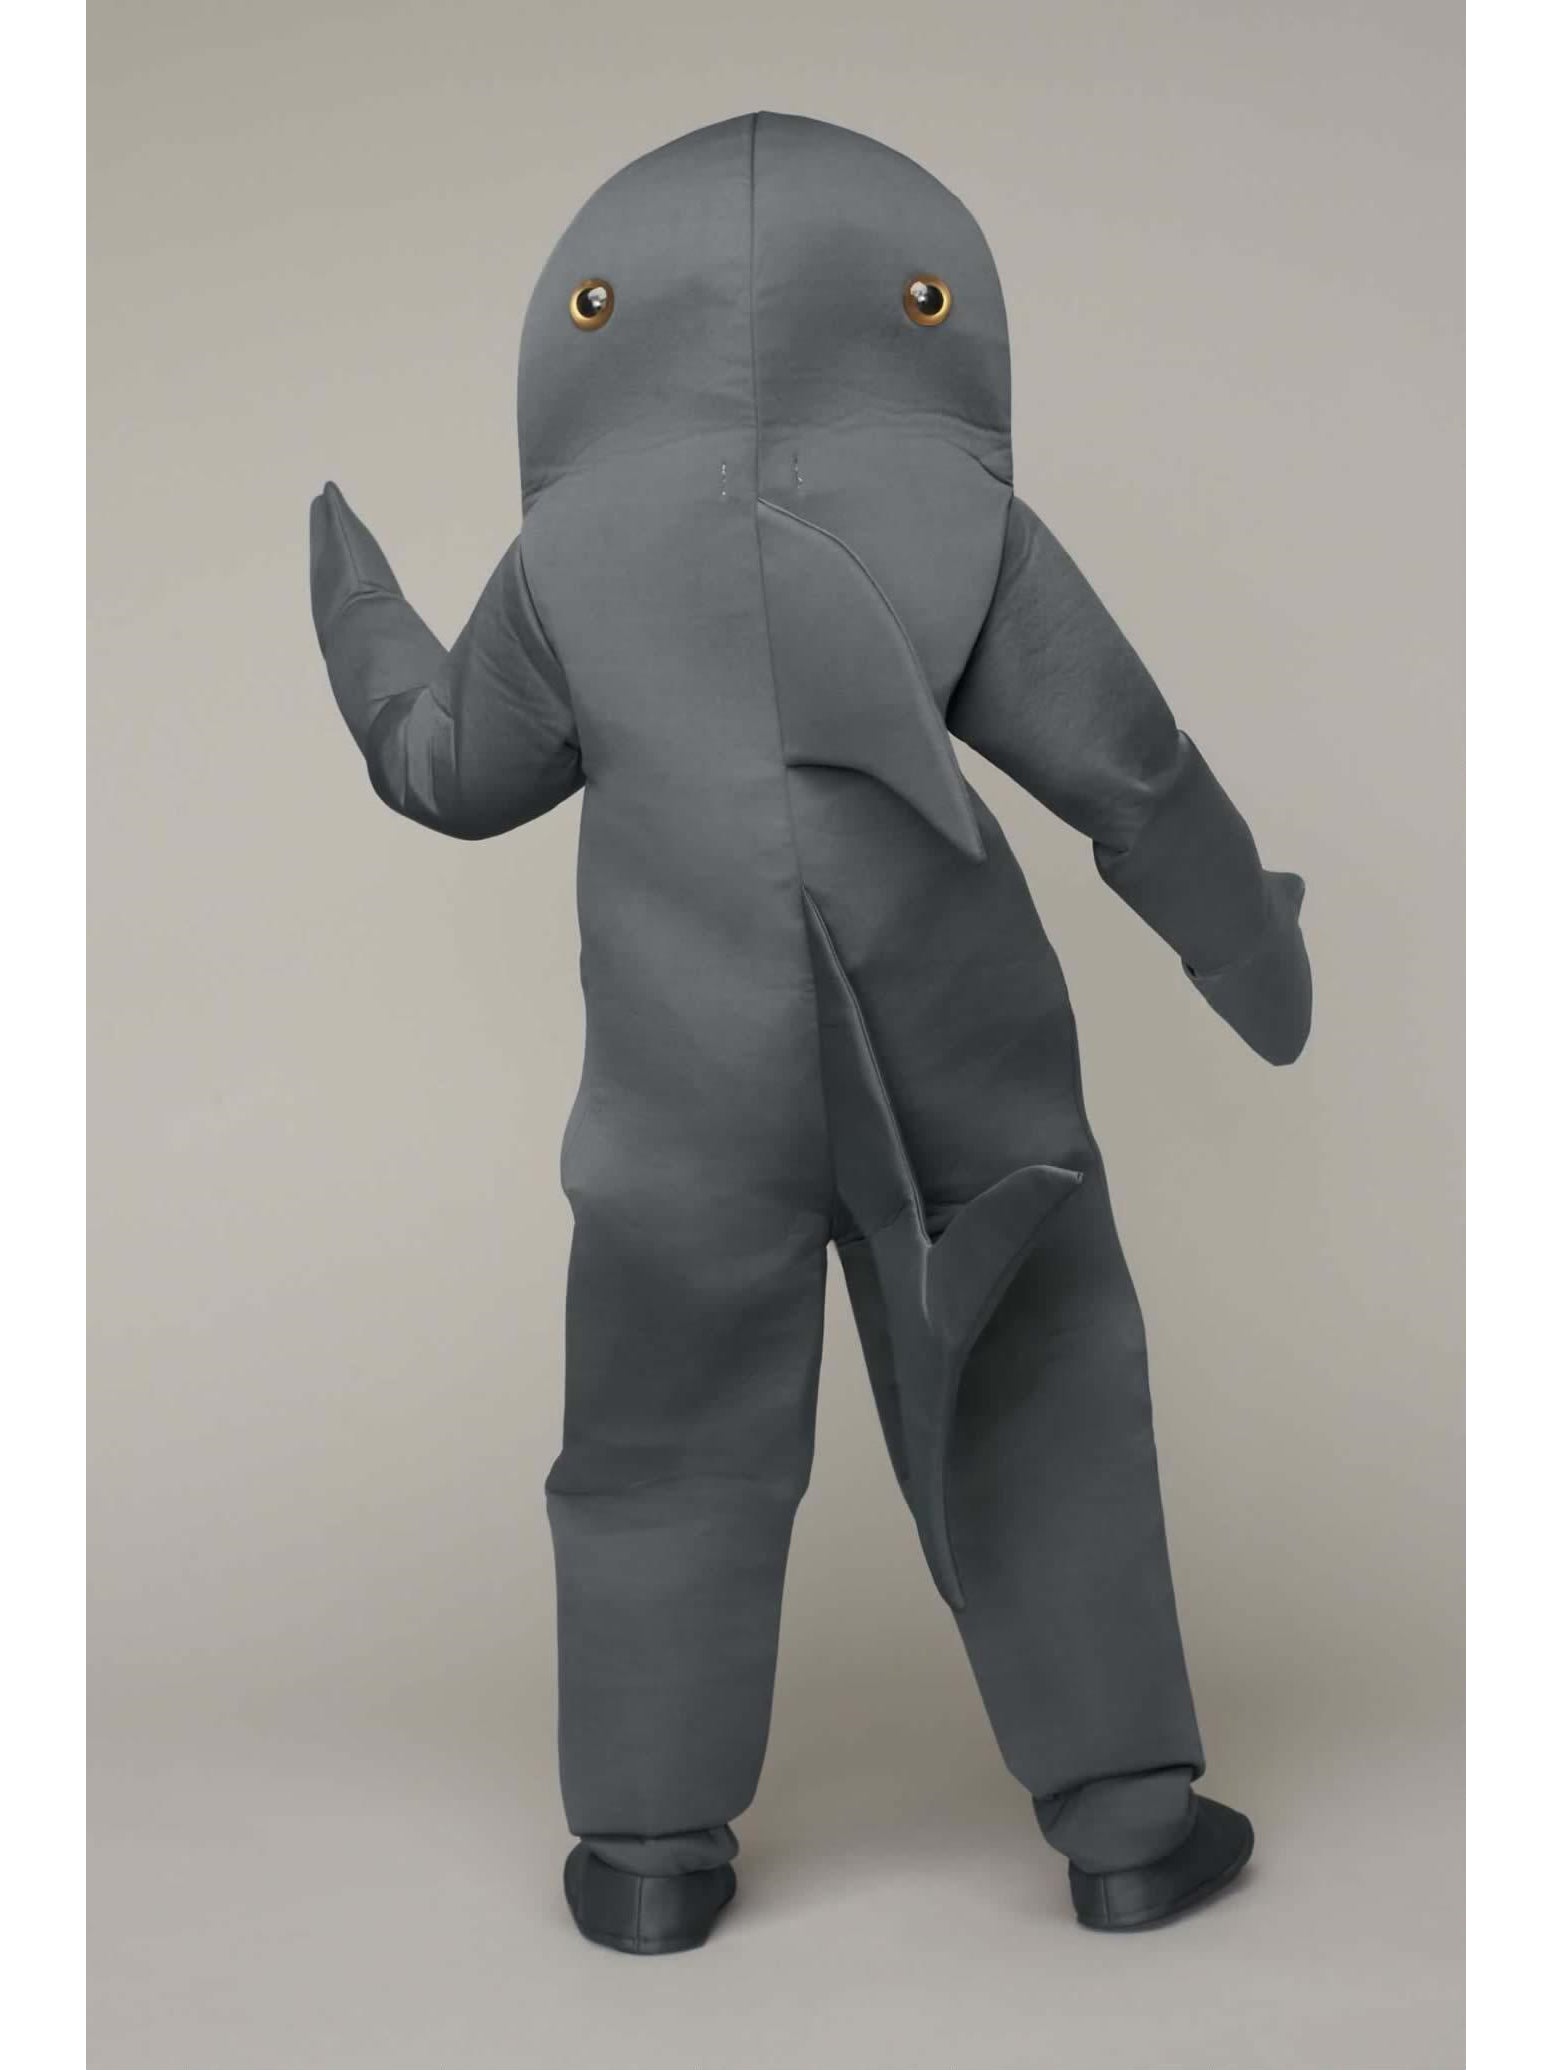 Great White Shark Costume for Kids  gra alt2